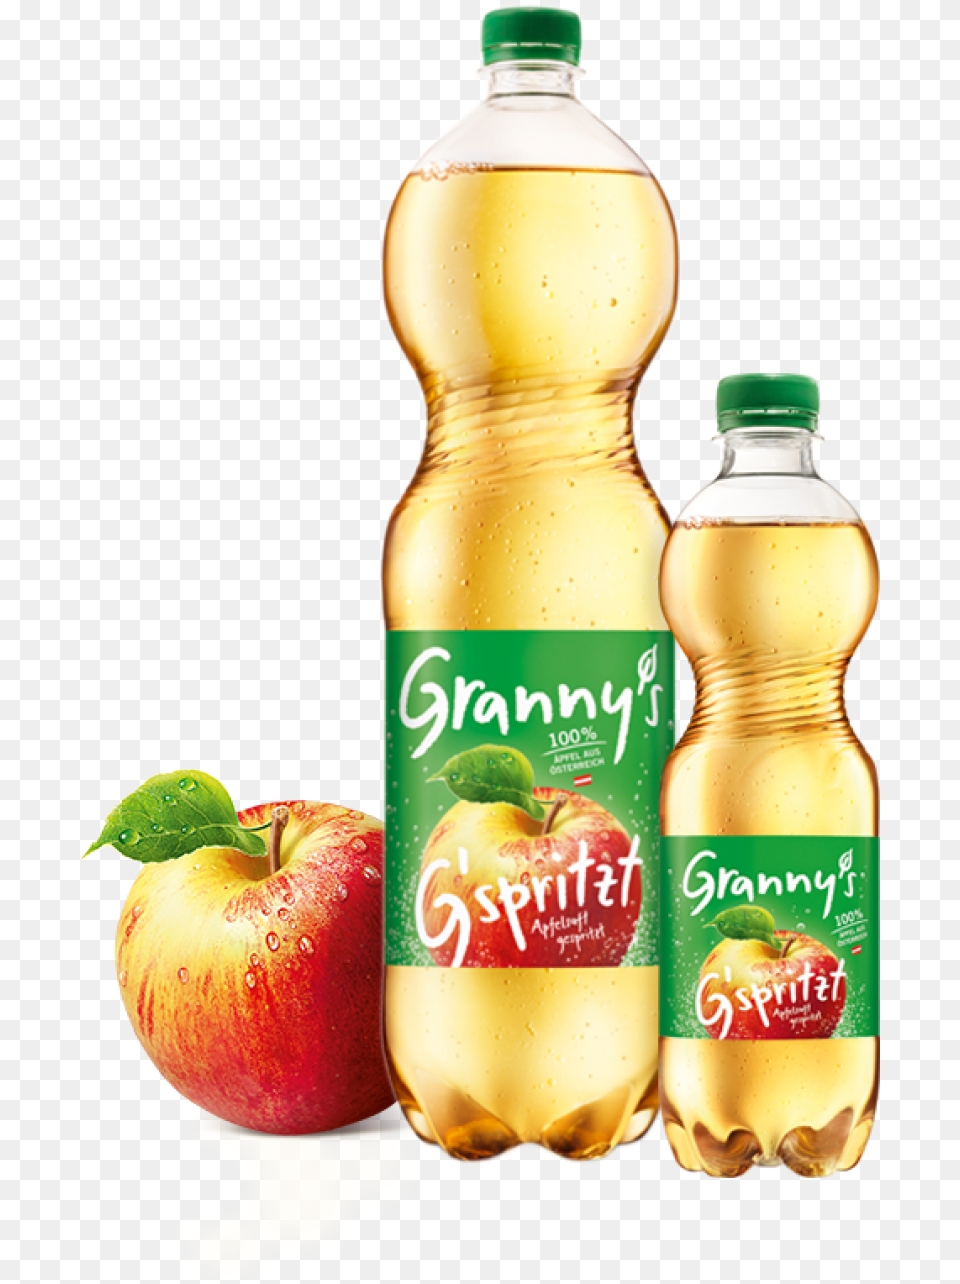 Granny S Sparkling Apple Juice Granny39s Apfelsaft, Beverage, Food, Fruit, Plant Png